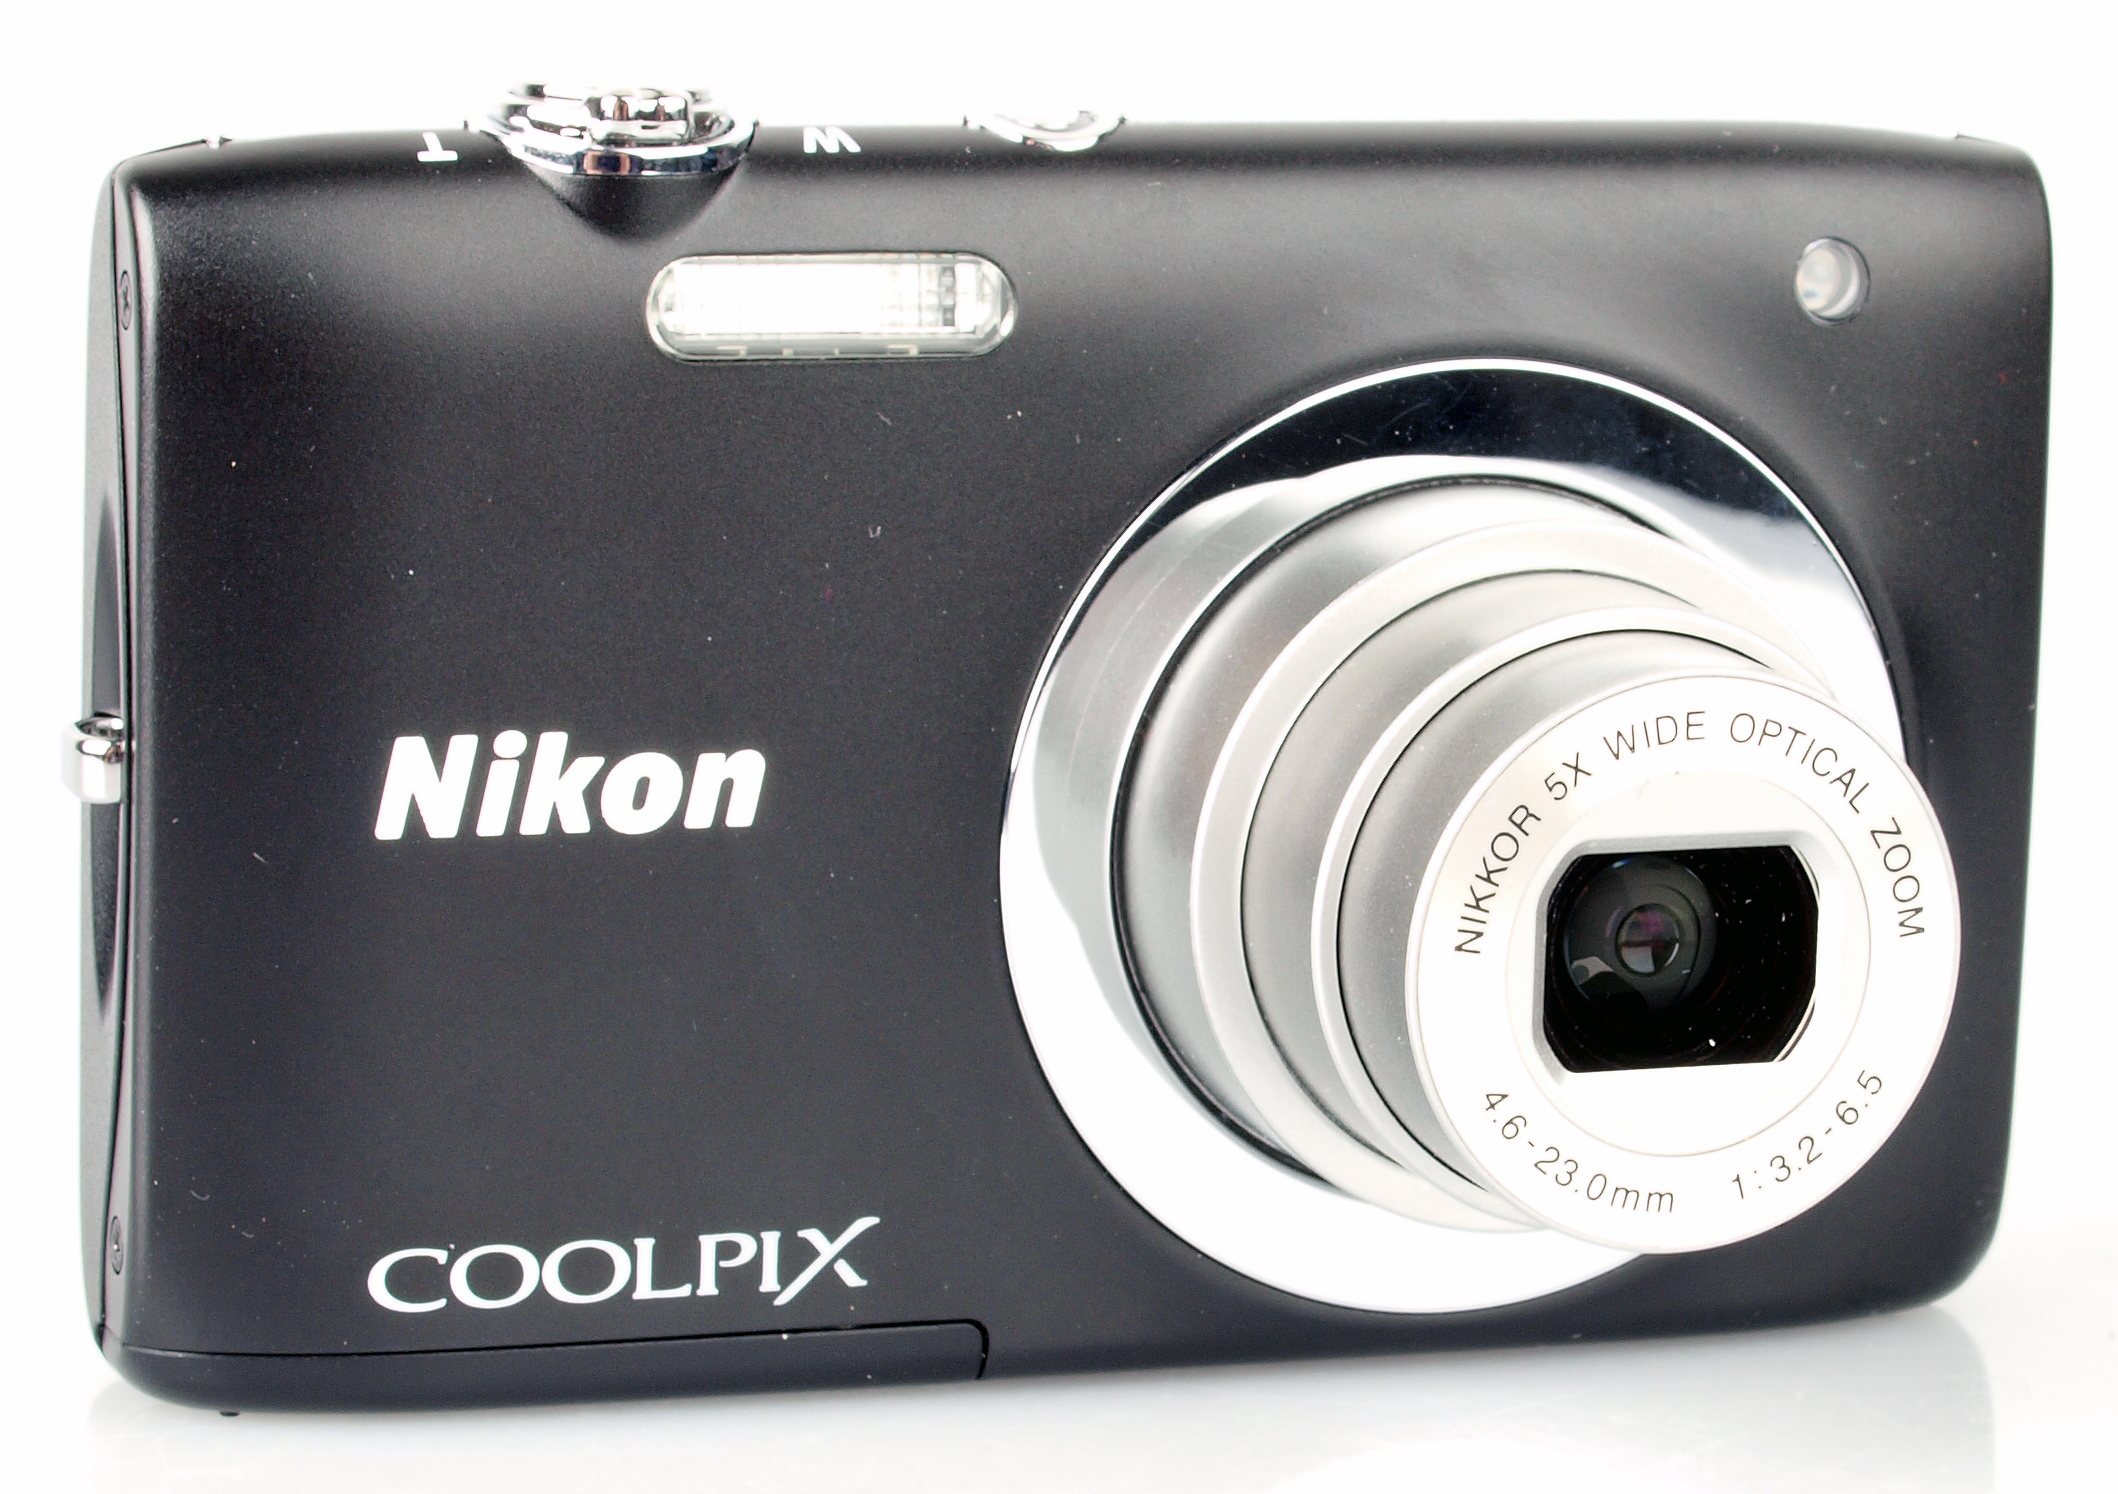 Nikon Compact Camera Reviews